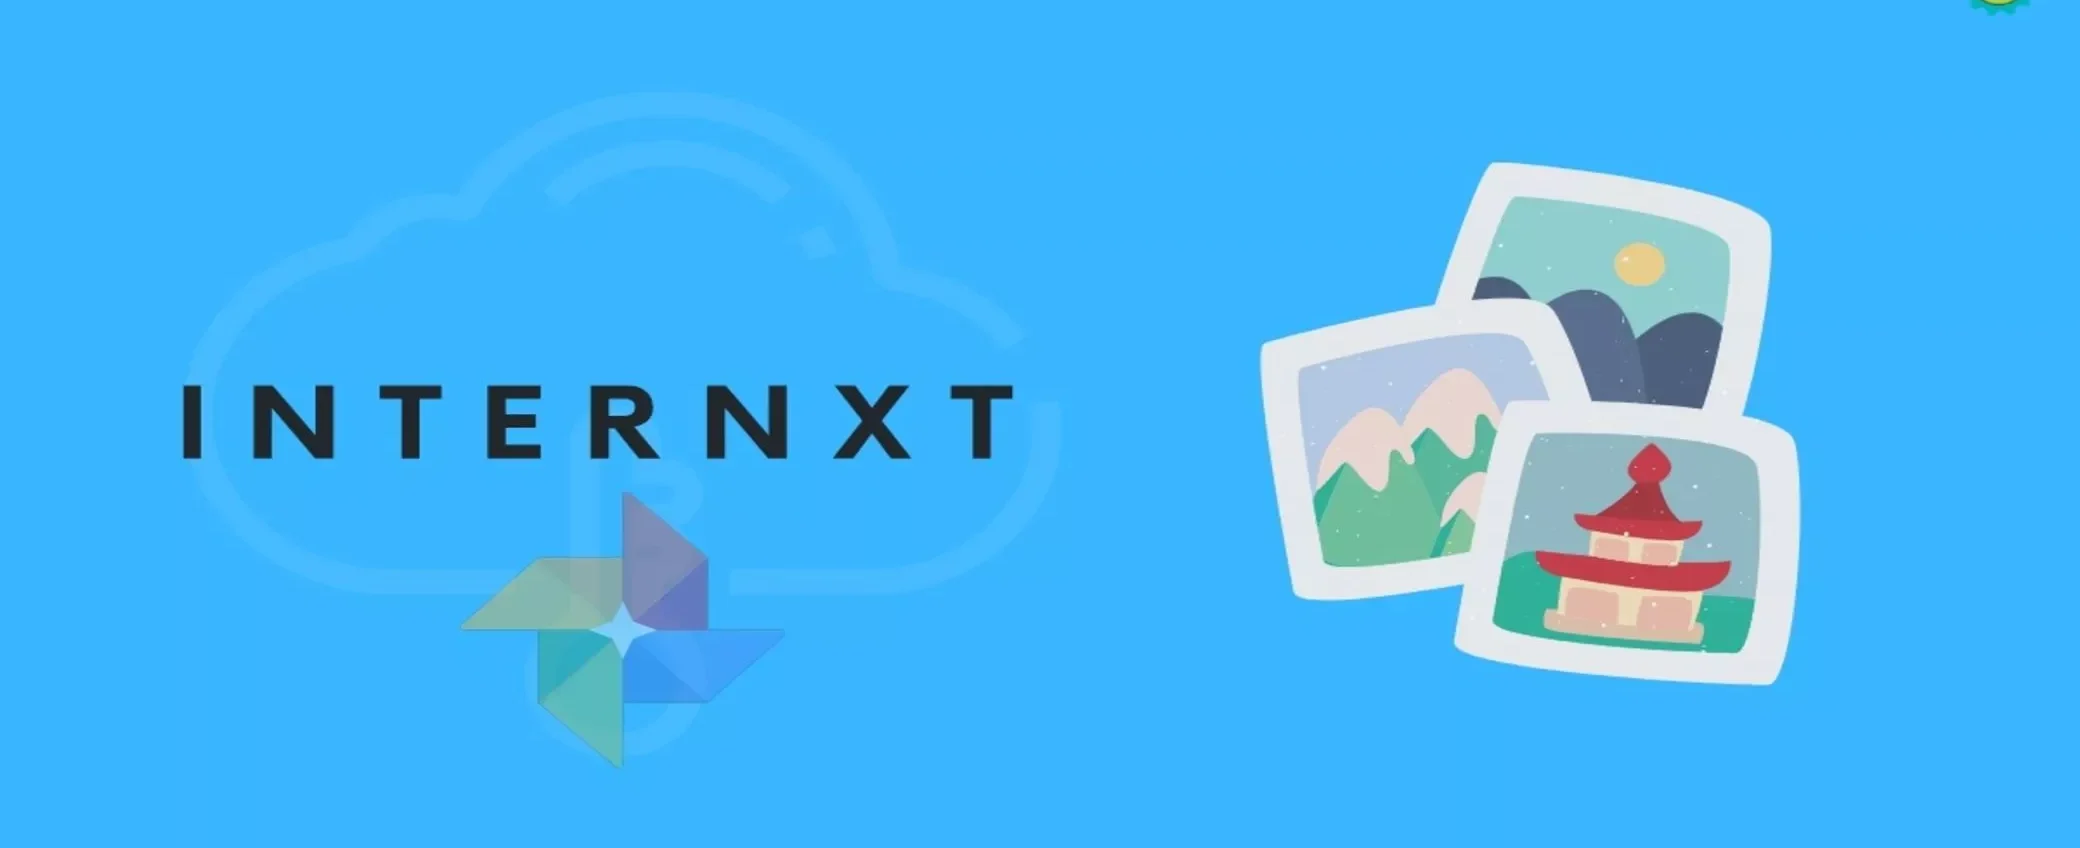 Fino a 10GB gratuiti con Internxt, il cloud storage sicuro